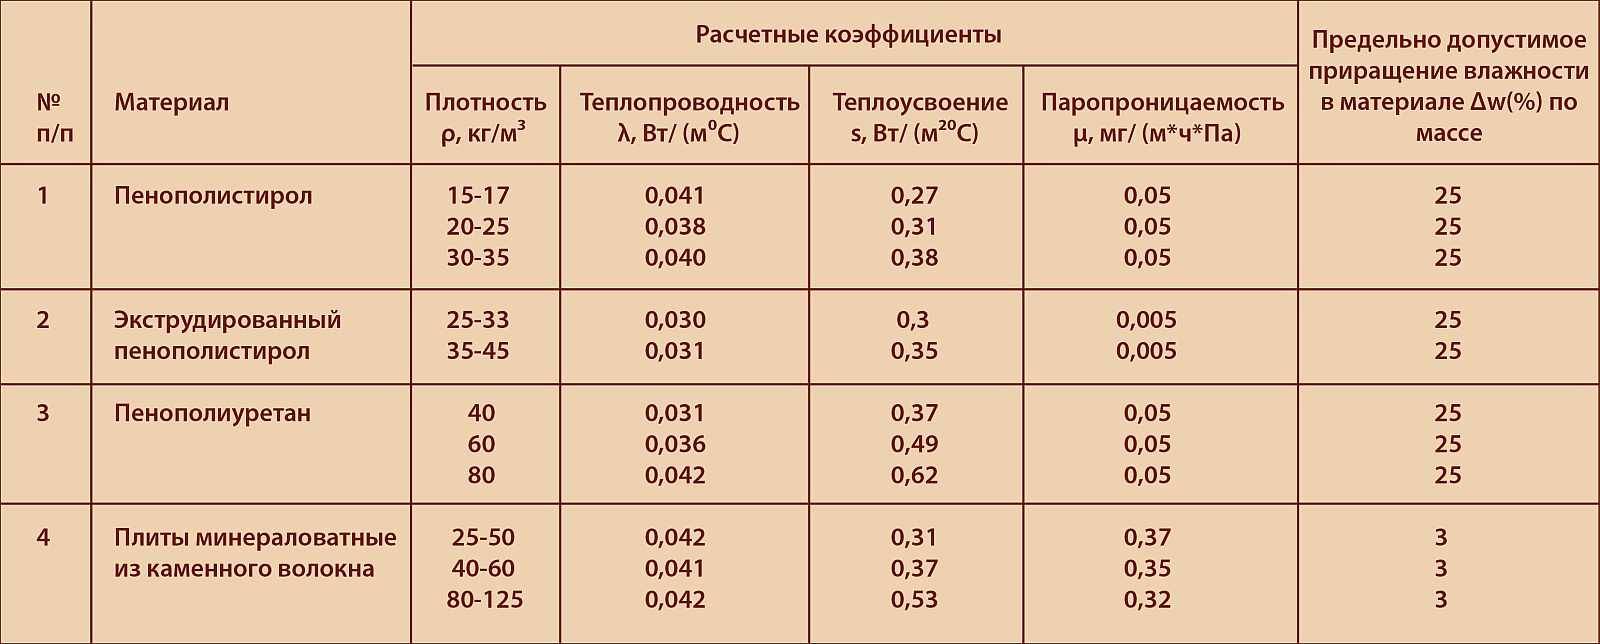 Утепление пенопластом полистирольным с-35: технические характеристики, плотность